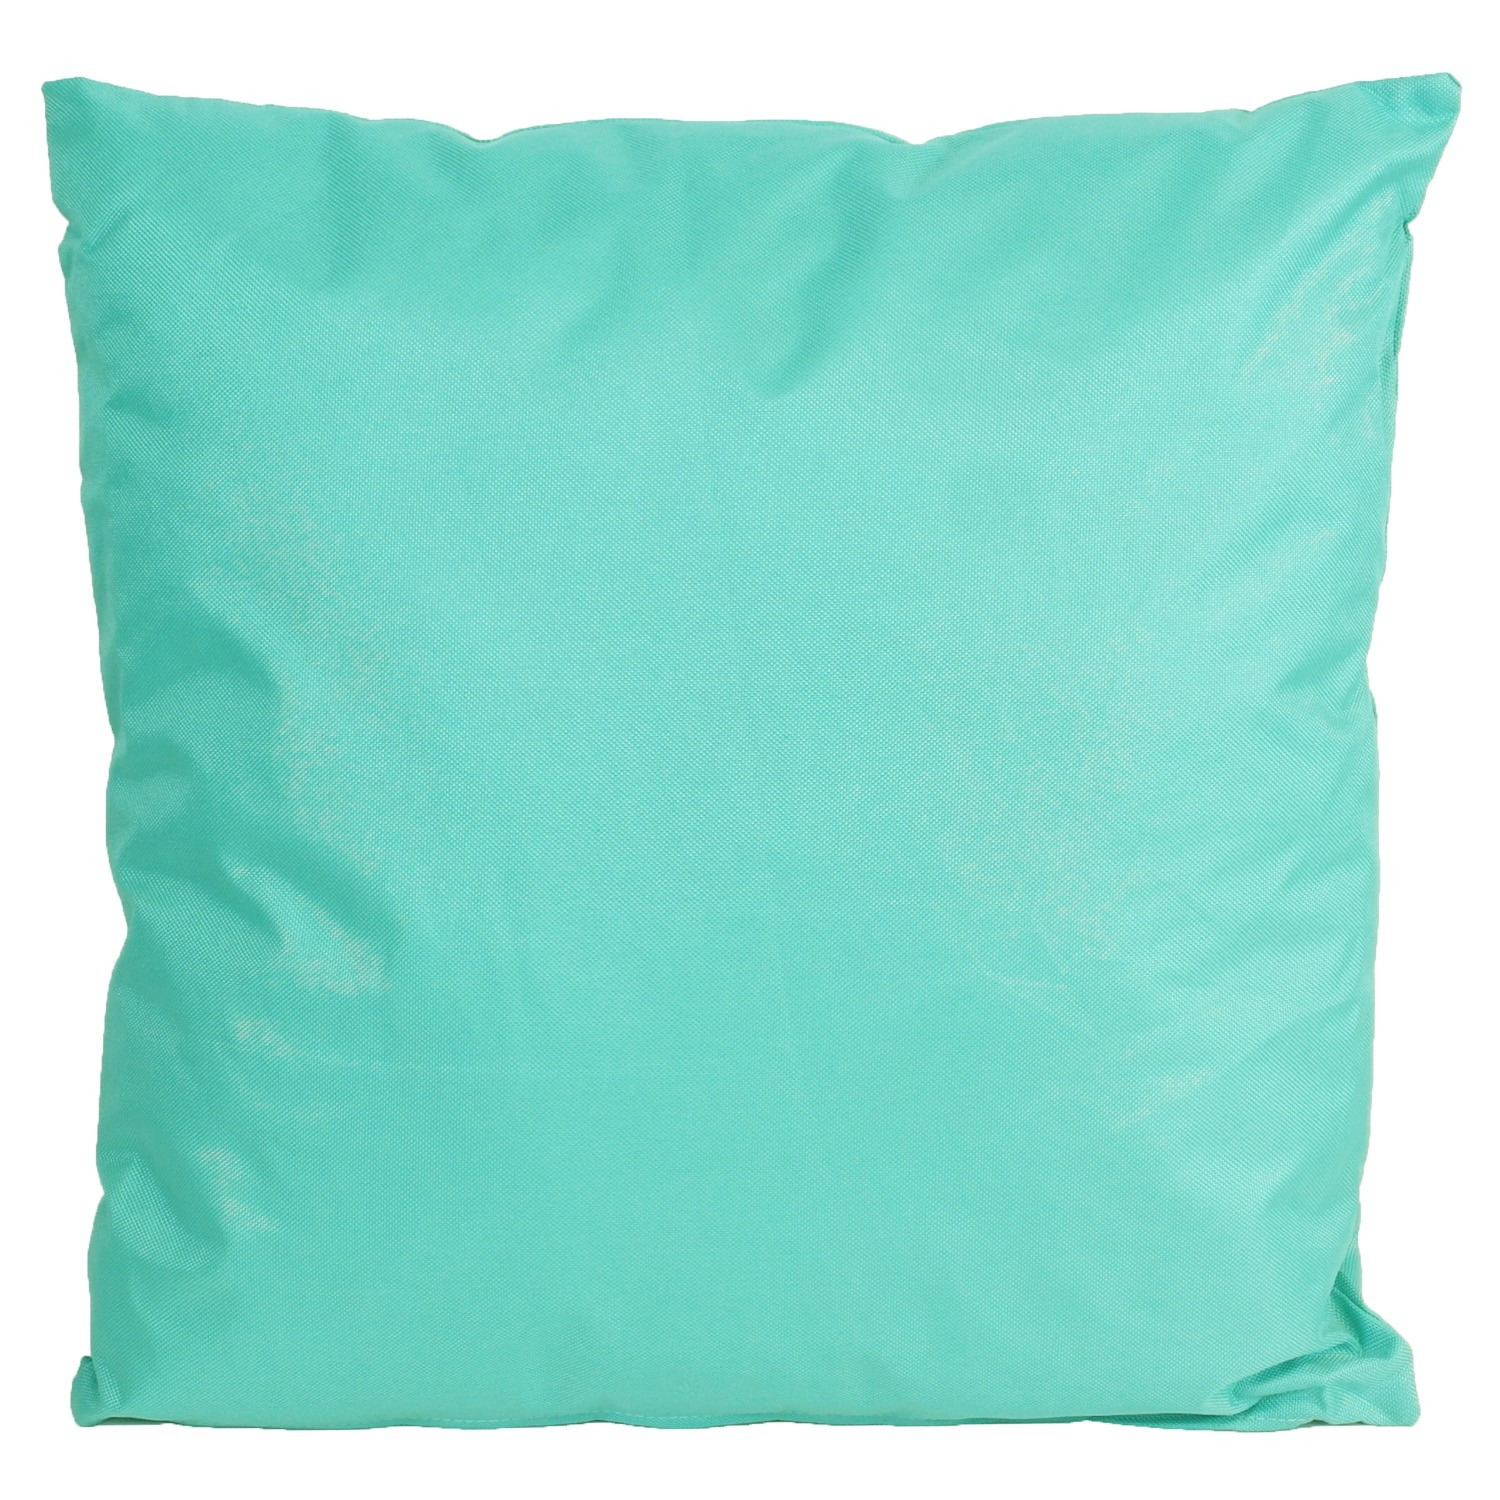 1x Buiten-woonkamer-slaapkamer kussens in het aqua blauw-groen 45 x 45 cm